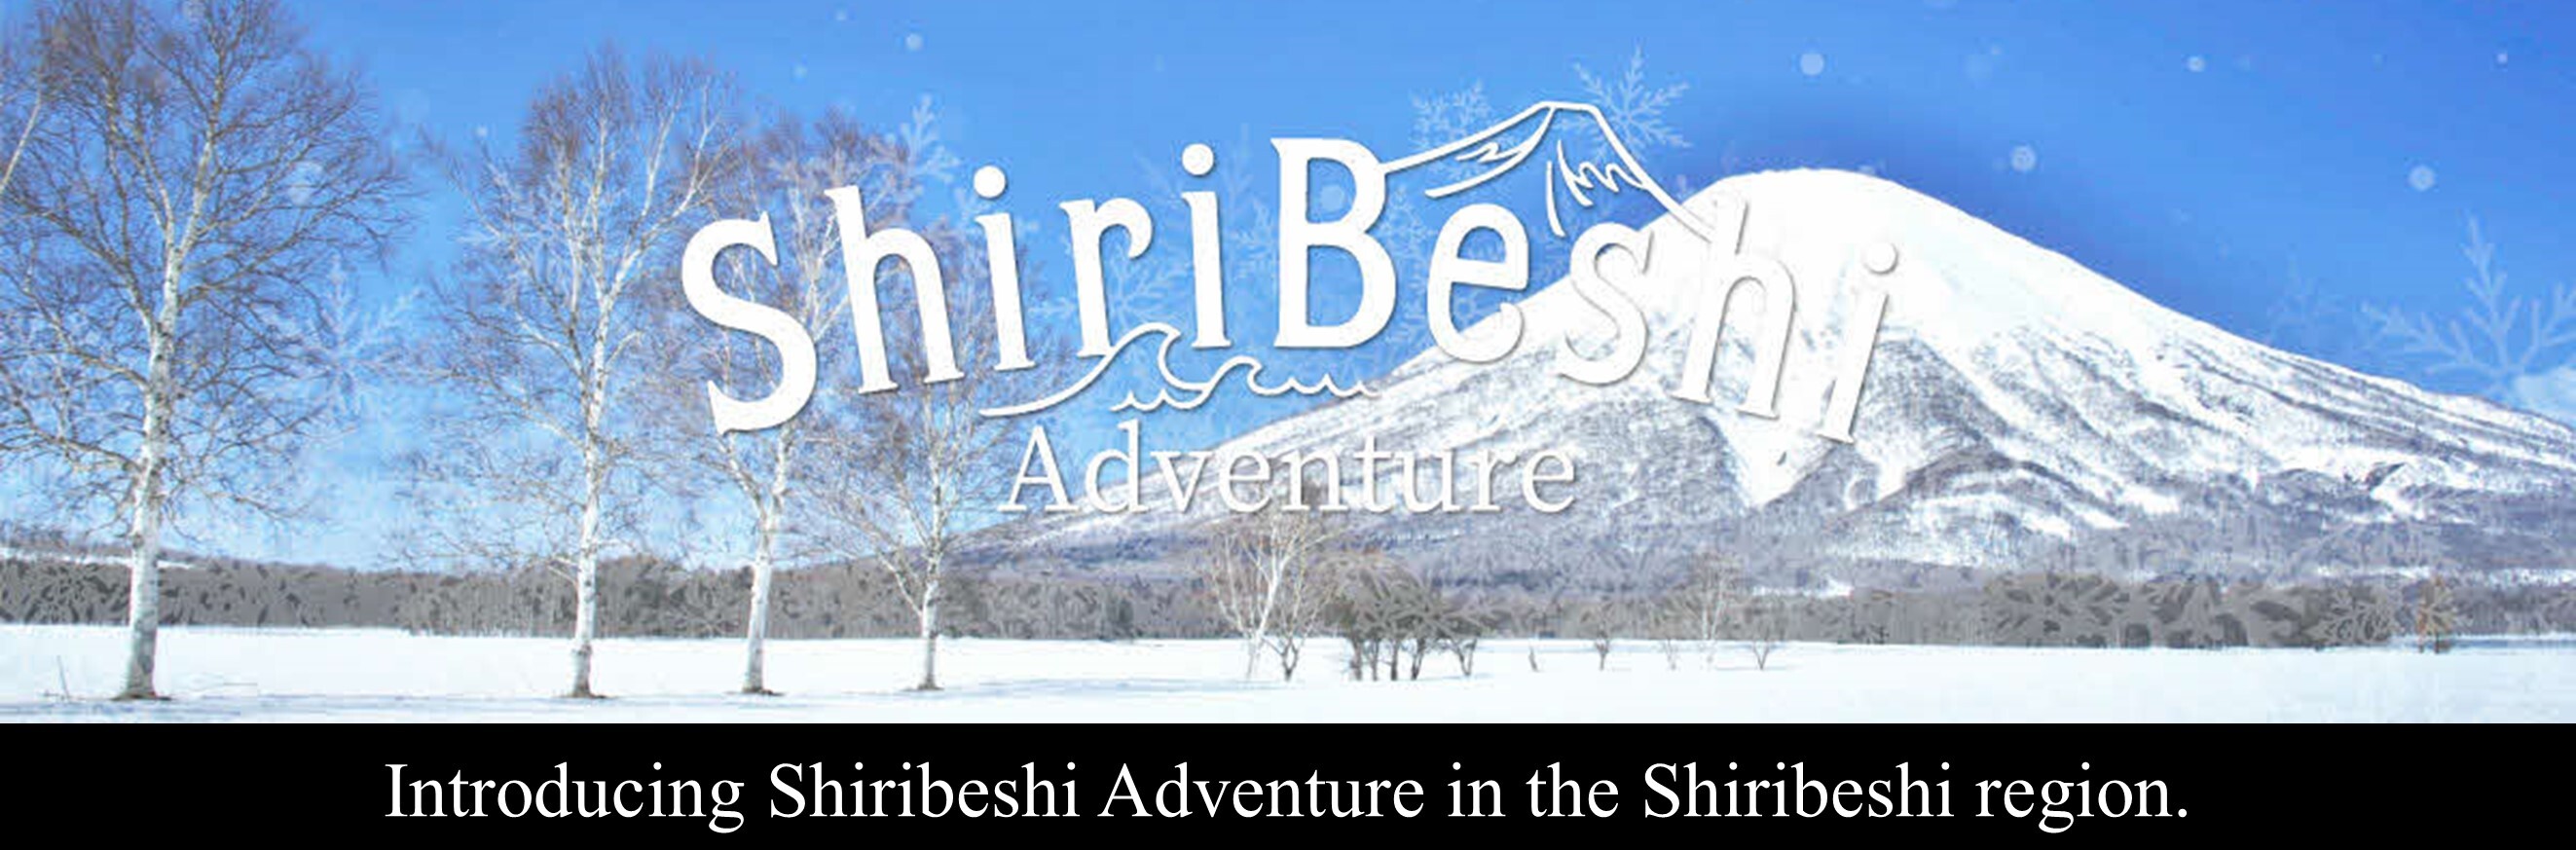 ShiribeshiAdventureバナー.JPG